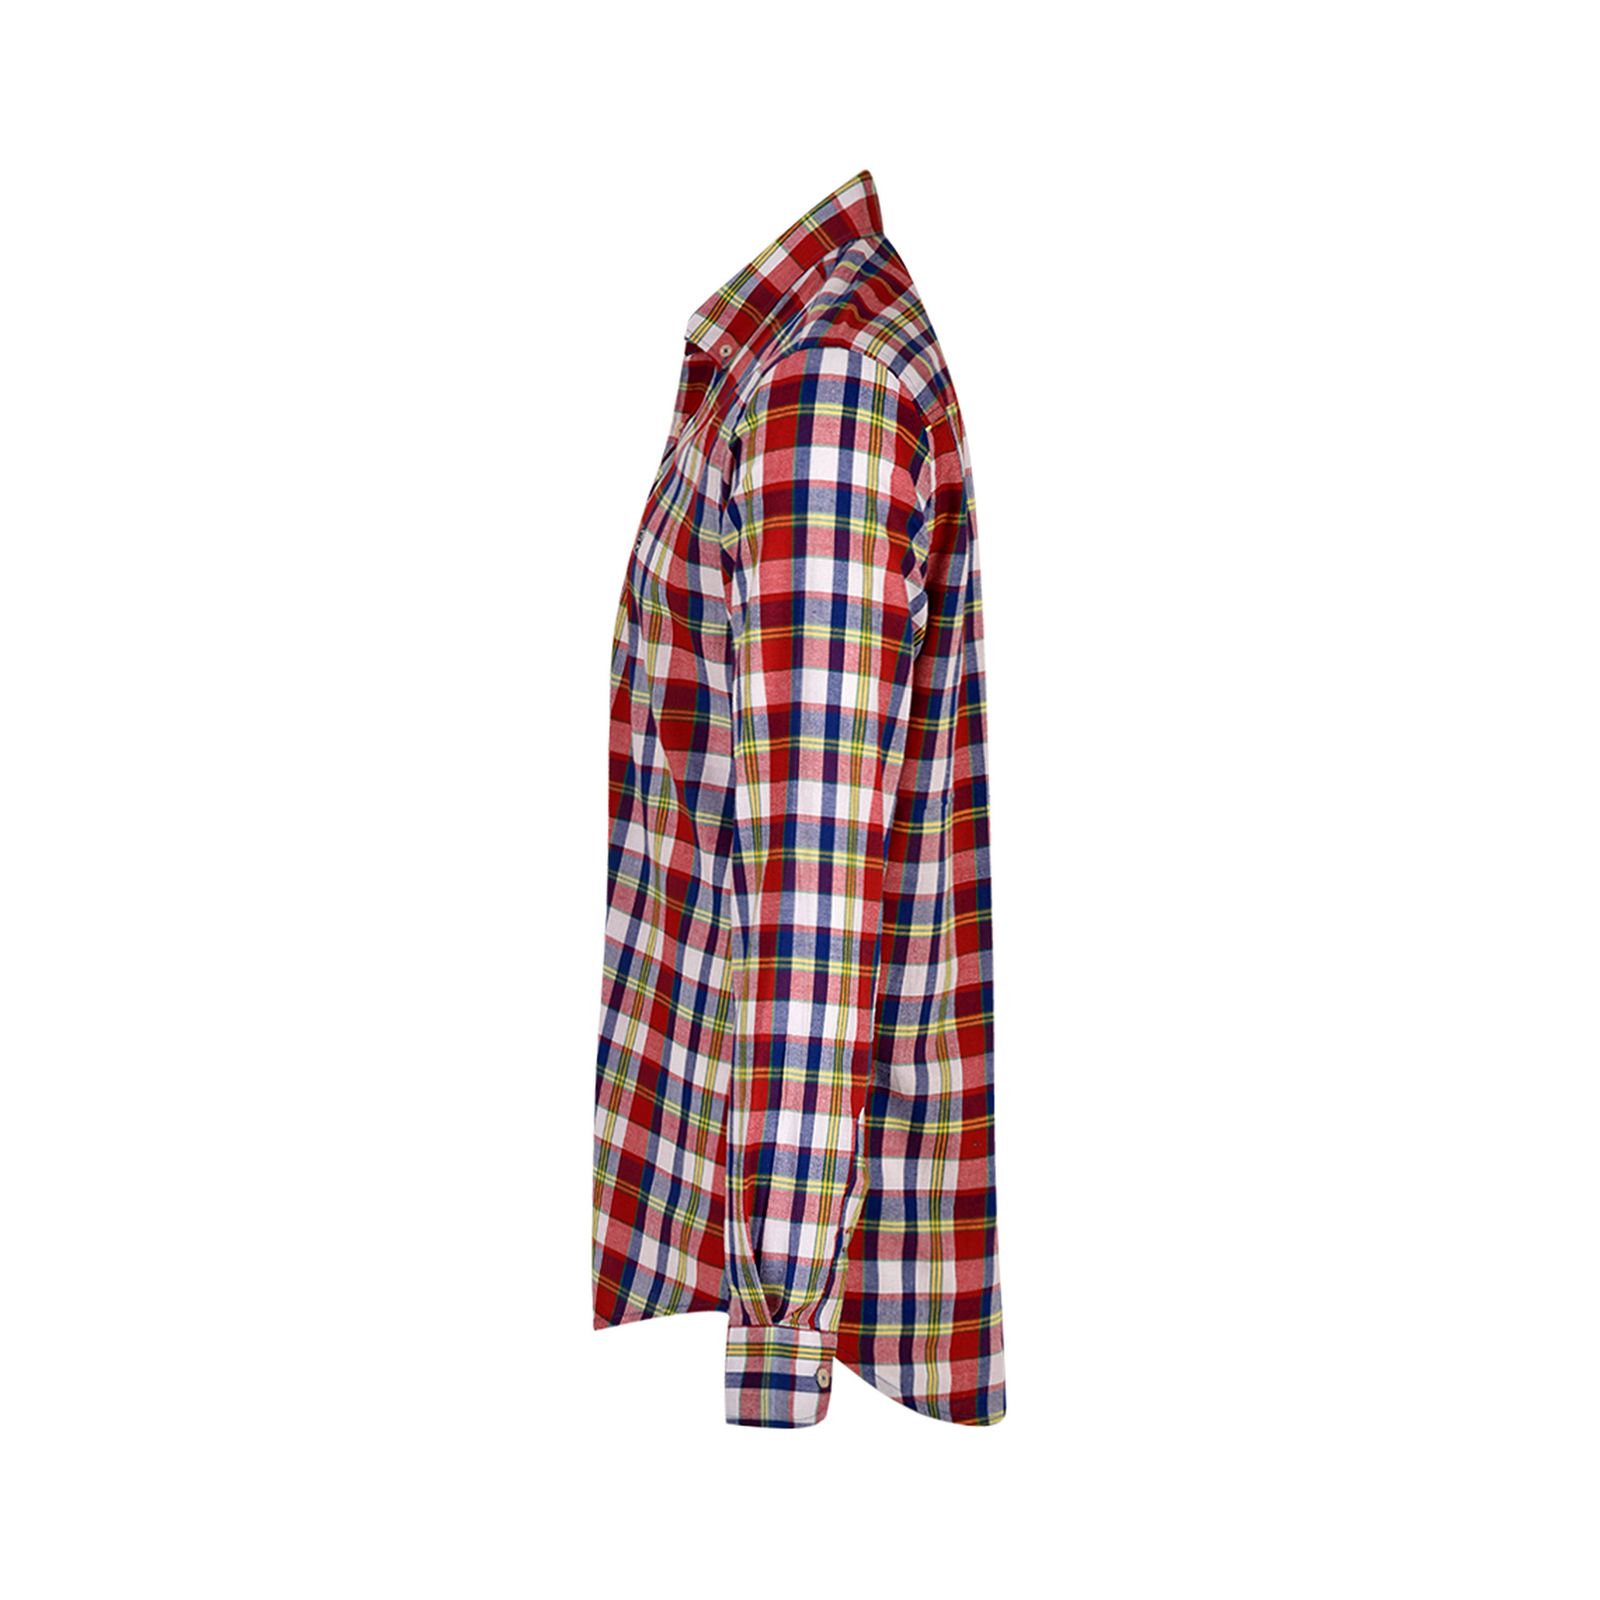 پیراهن آستین بلند مردانه بادی اسپینر مدل 1129 کد 2 رنگ قرمز -  - 2